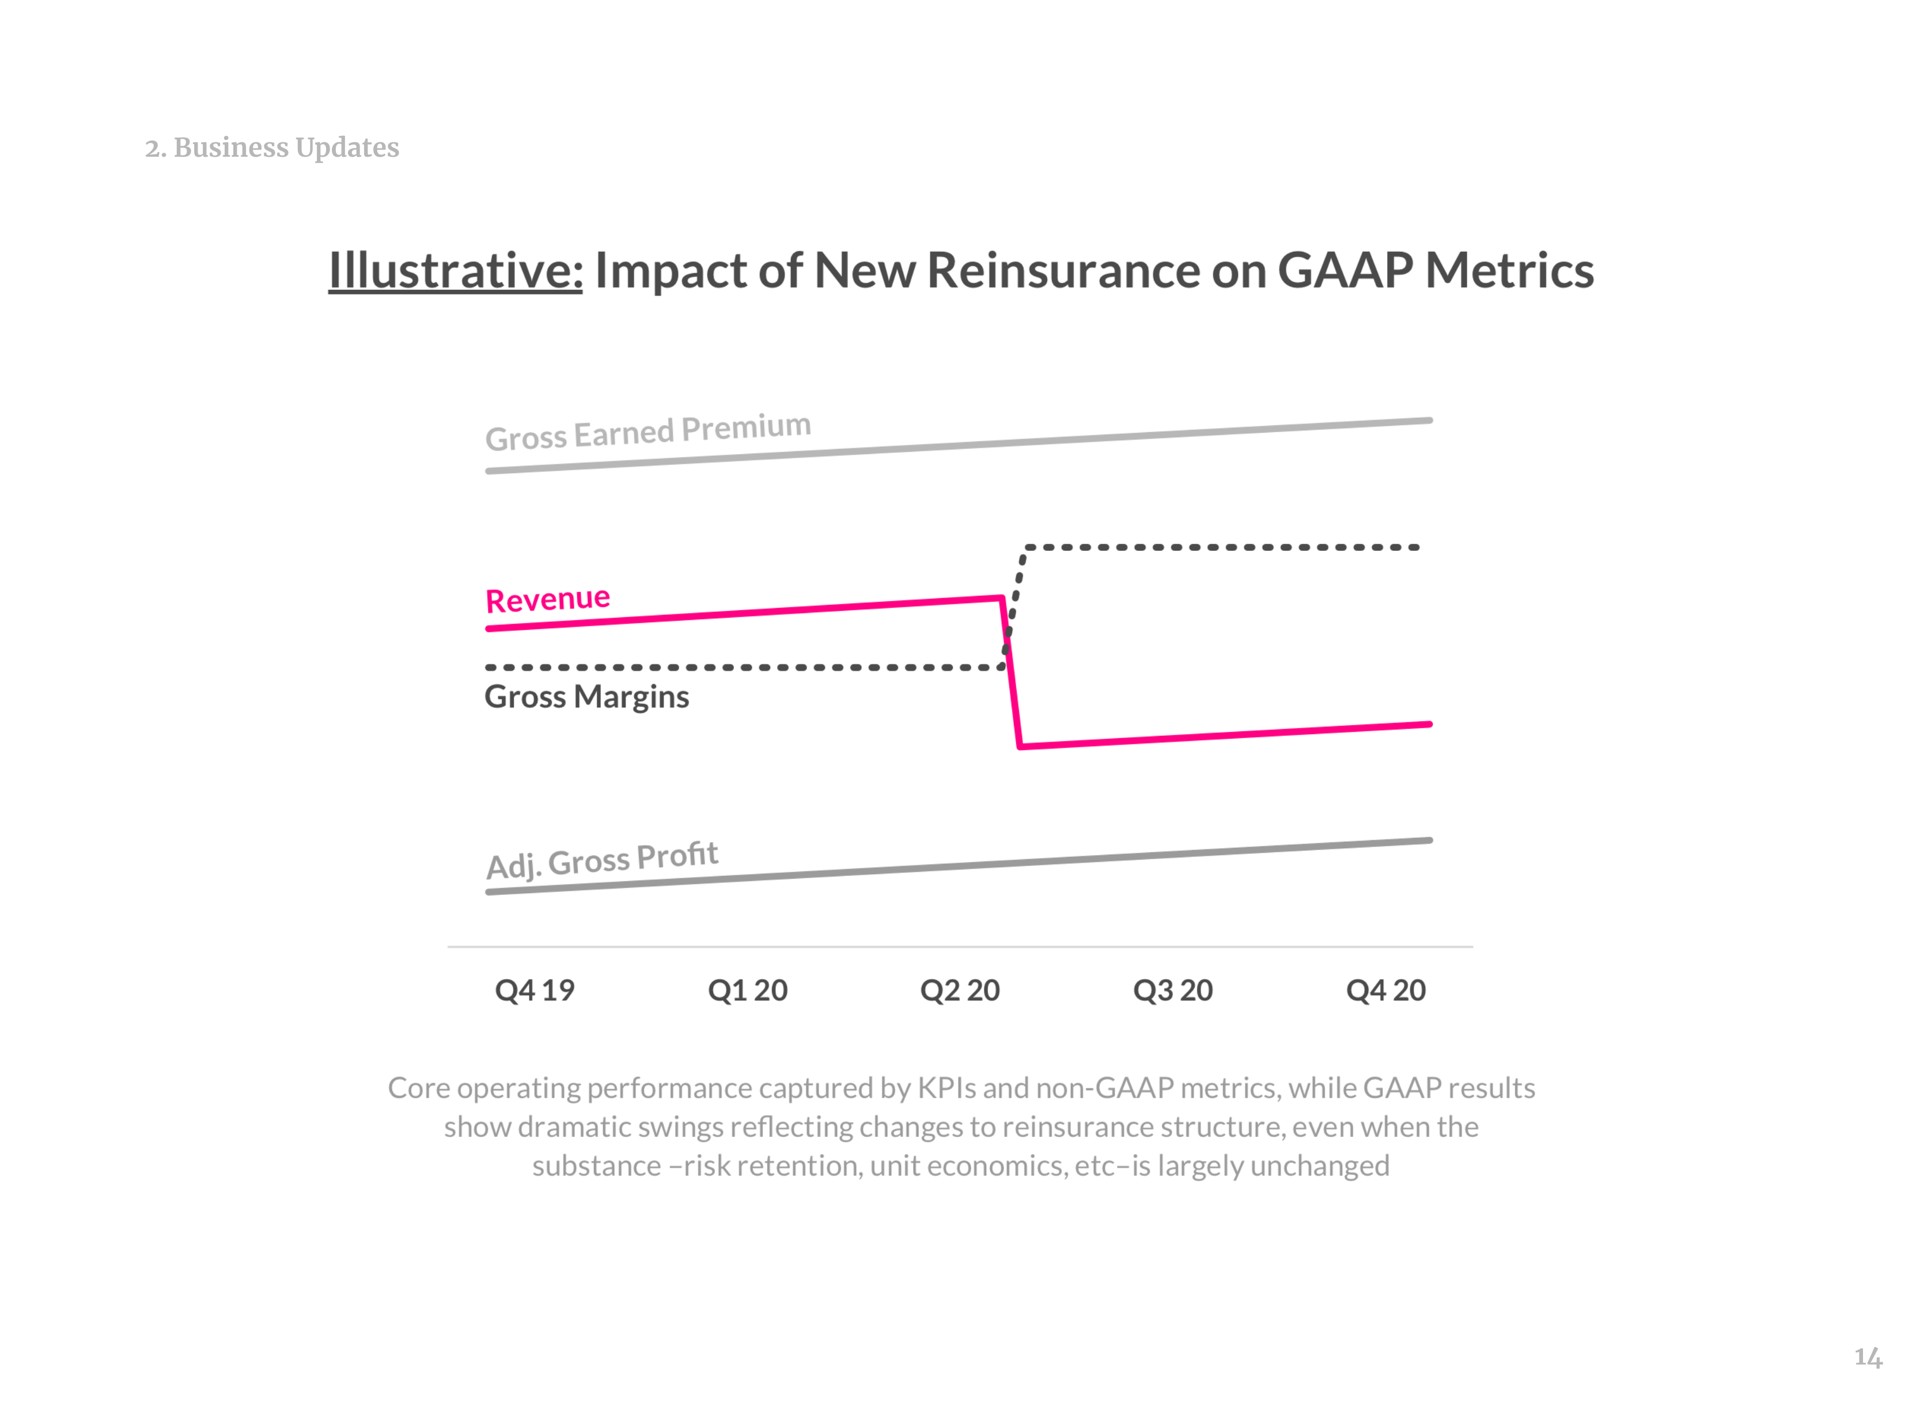 illustrative impact of new reinsurance on metrics gross earned premium revenue gross margins gross profit | Lemonade